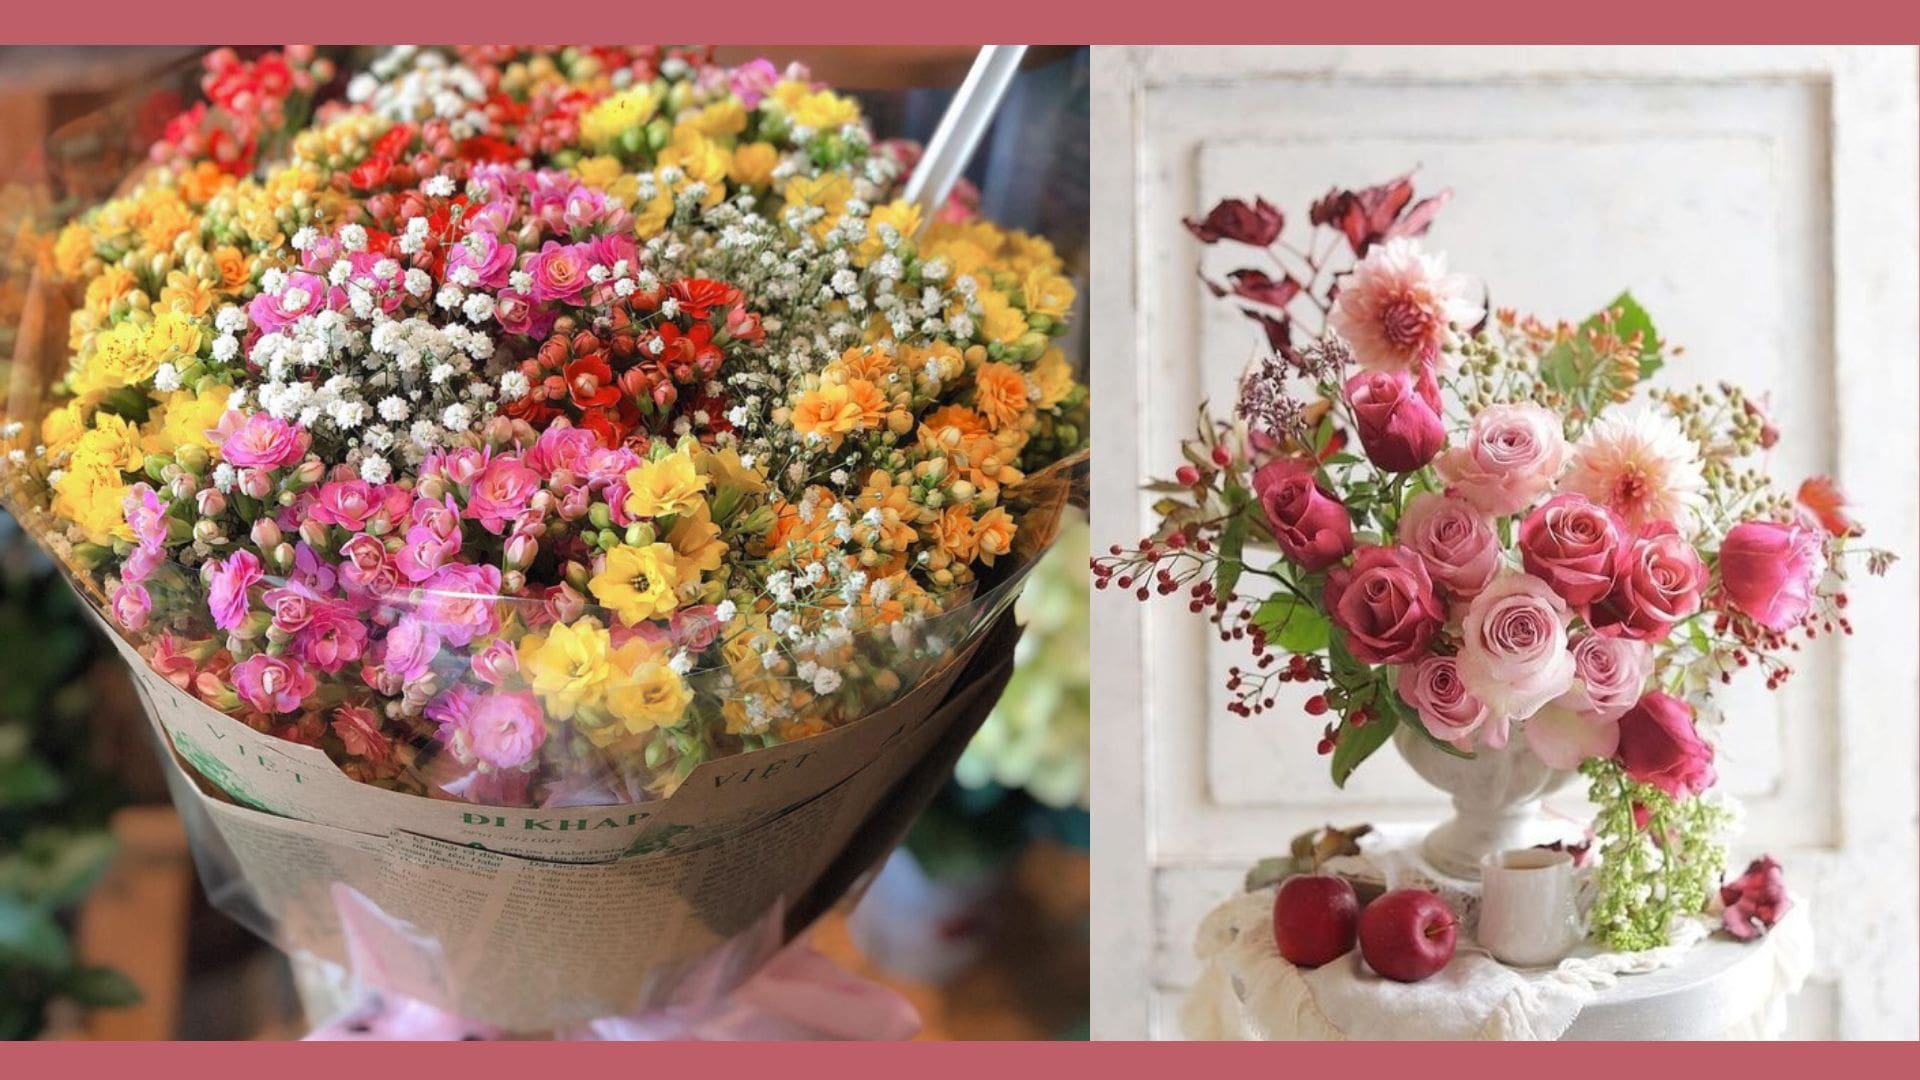 Phomai’s Flower Shop – shop hoa tươi gần đây tại Đà Nẵng uy tín